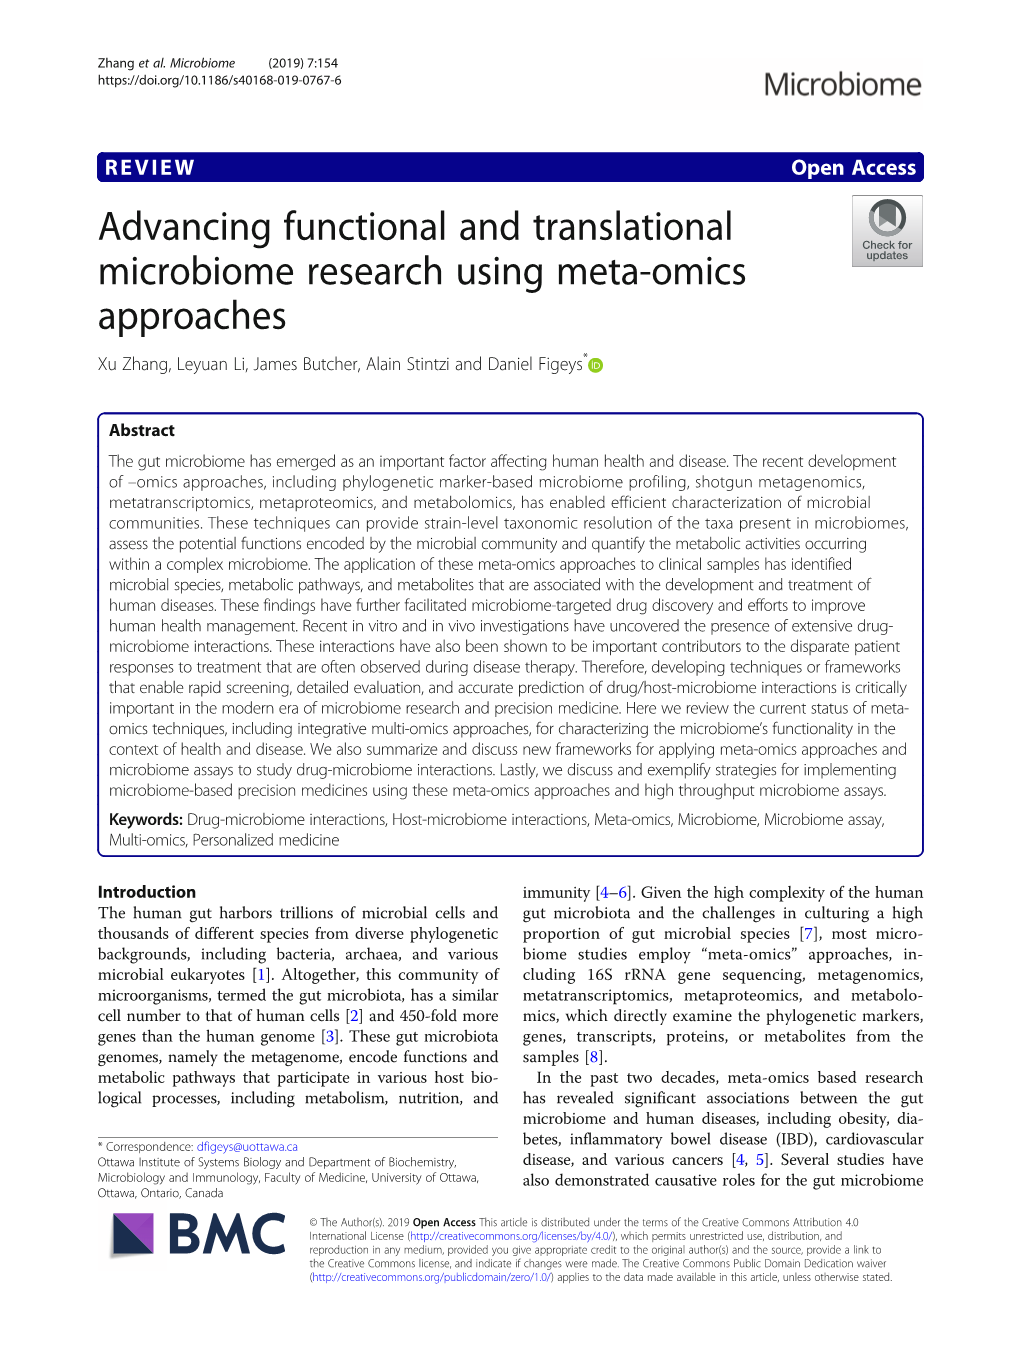 Advancing Functional and Translational Microbiome Research Using Meta-Omics Approaches Xu Zhang, Leyuan Li, James Butcher, Alain Stintzi and Daniel Figeys*